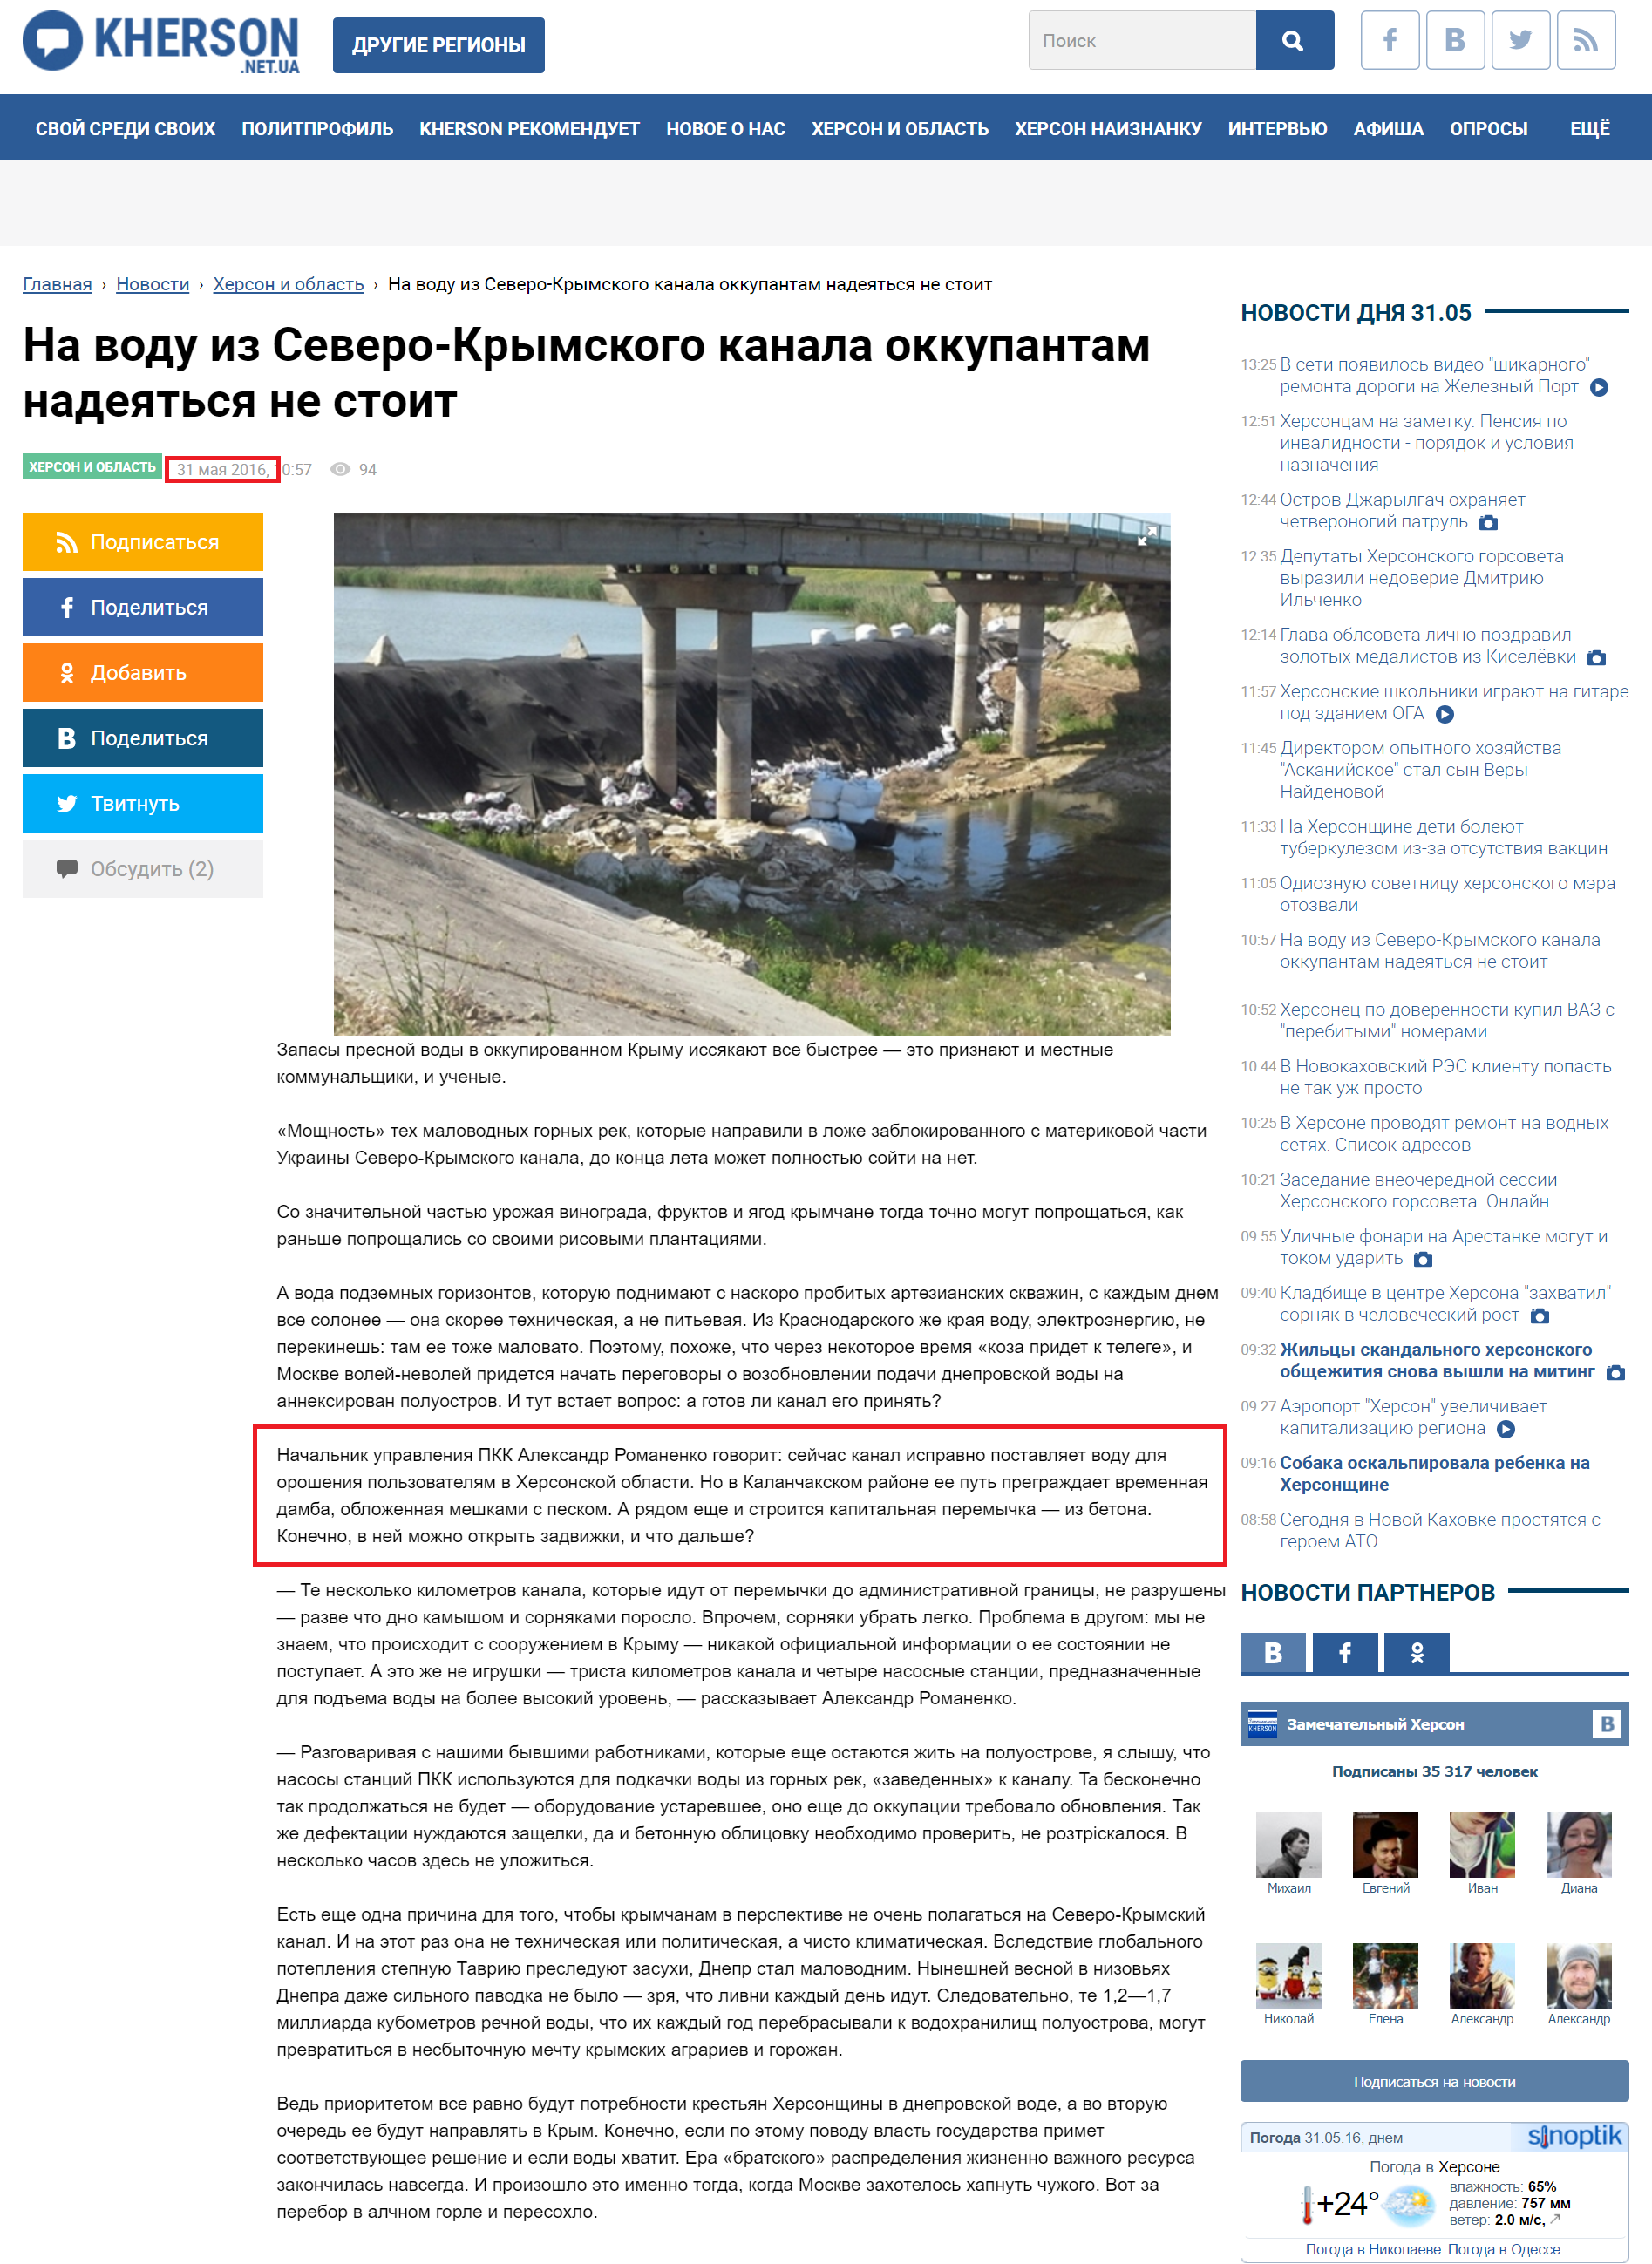 http://kherson.net.ua/news/na-vody-severo-krymskogo-kanala-okkupantam-nadejatsja-ne-stoit